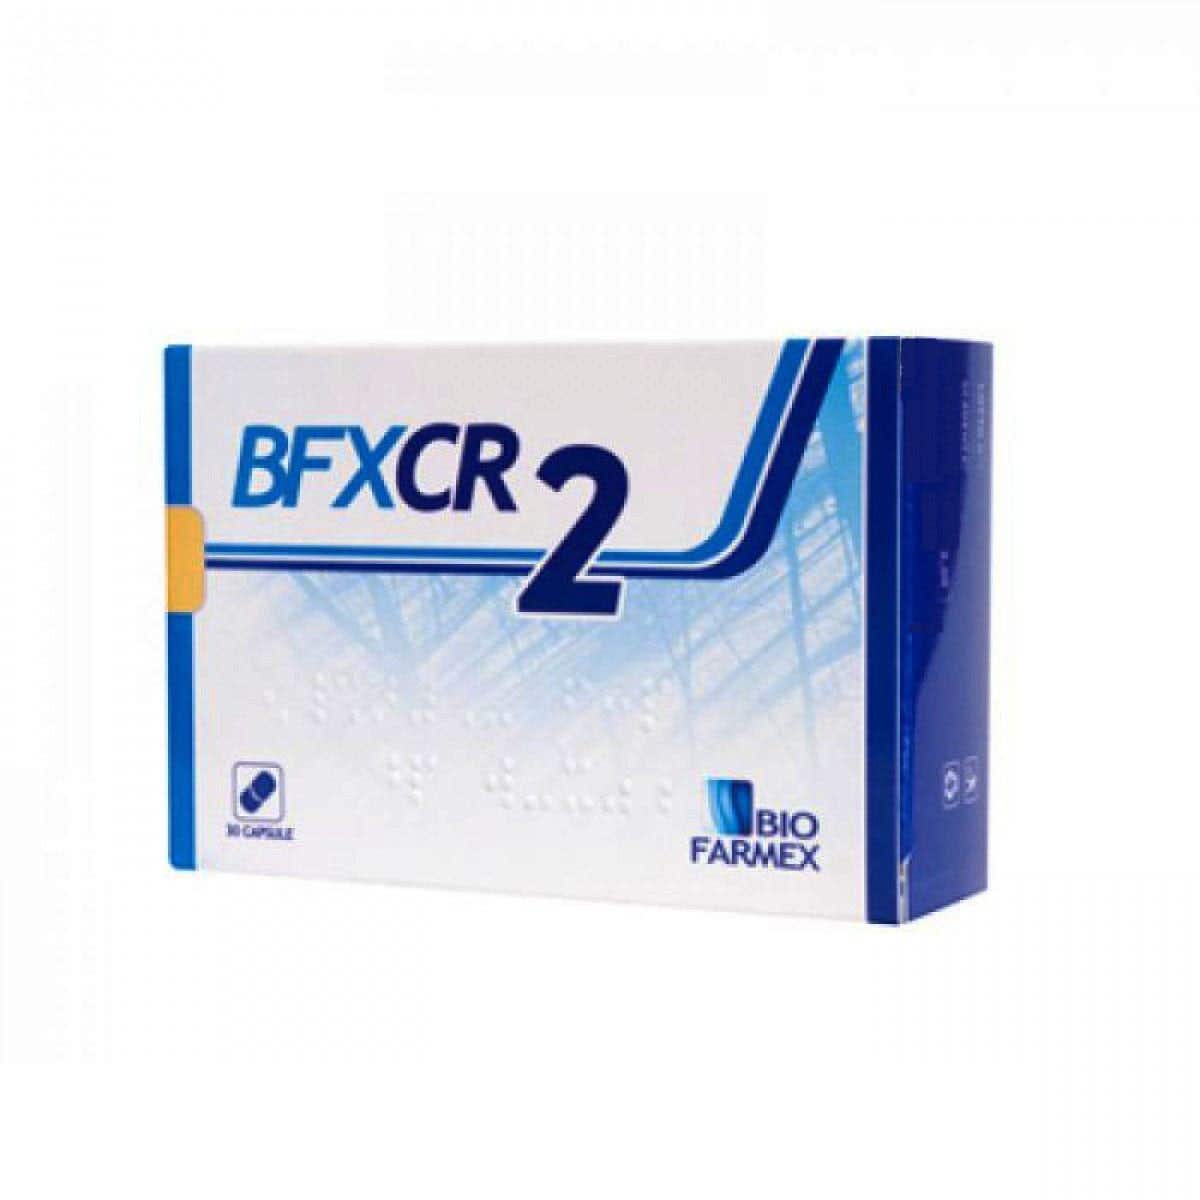 Image of BioFarmex BFXCR 2 Rimedio Omeopatico 30 Capsule